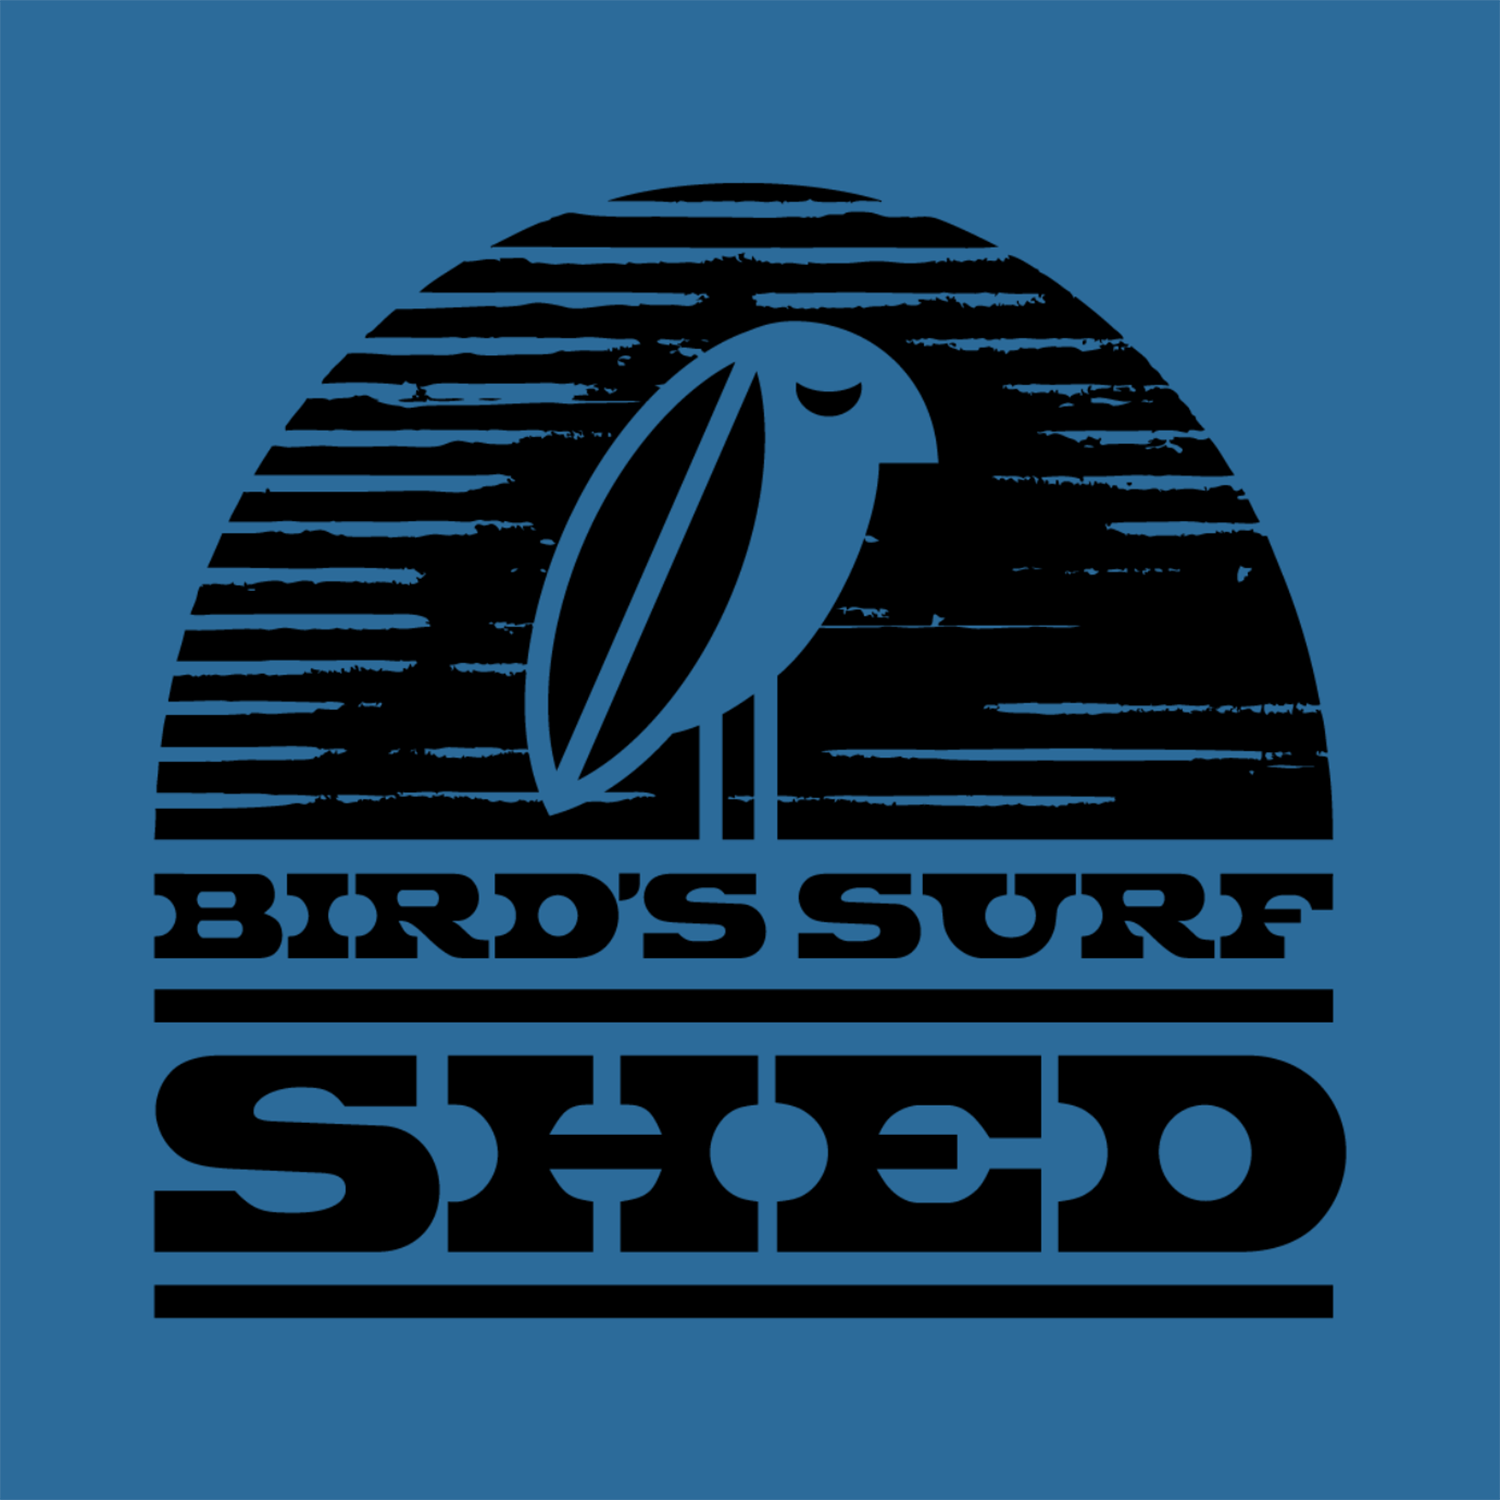 Shed logo 1500